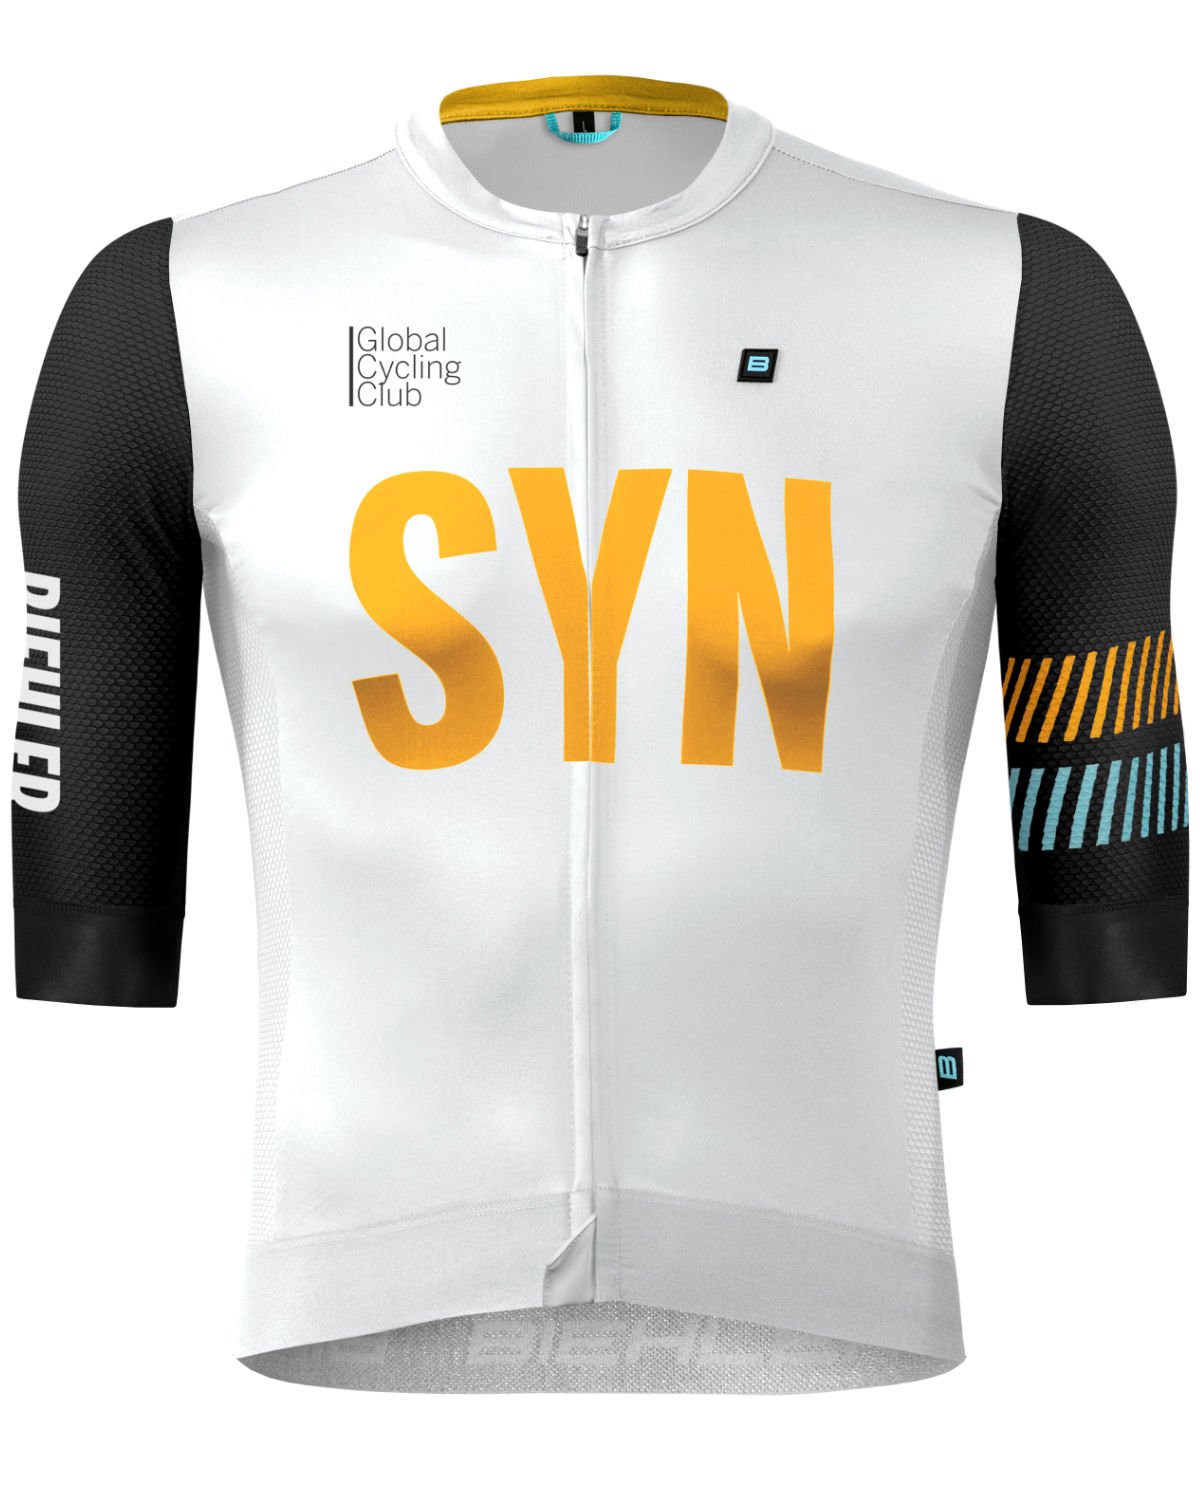 Syndicate Aero Pro Jersey | SYN Rise